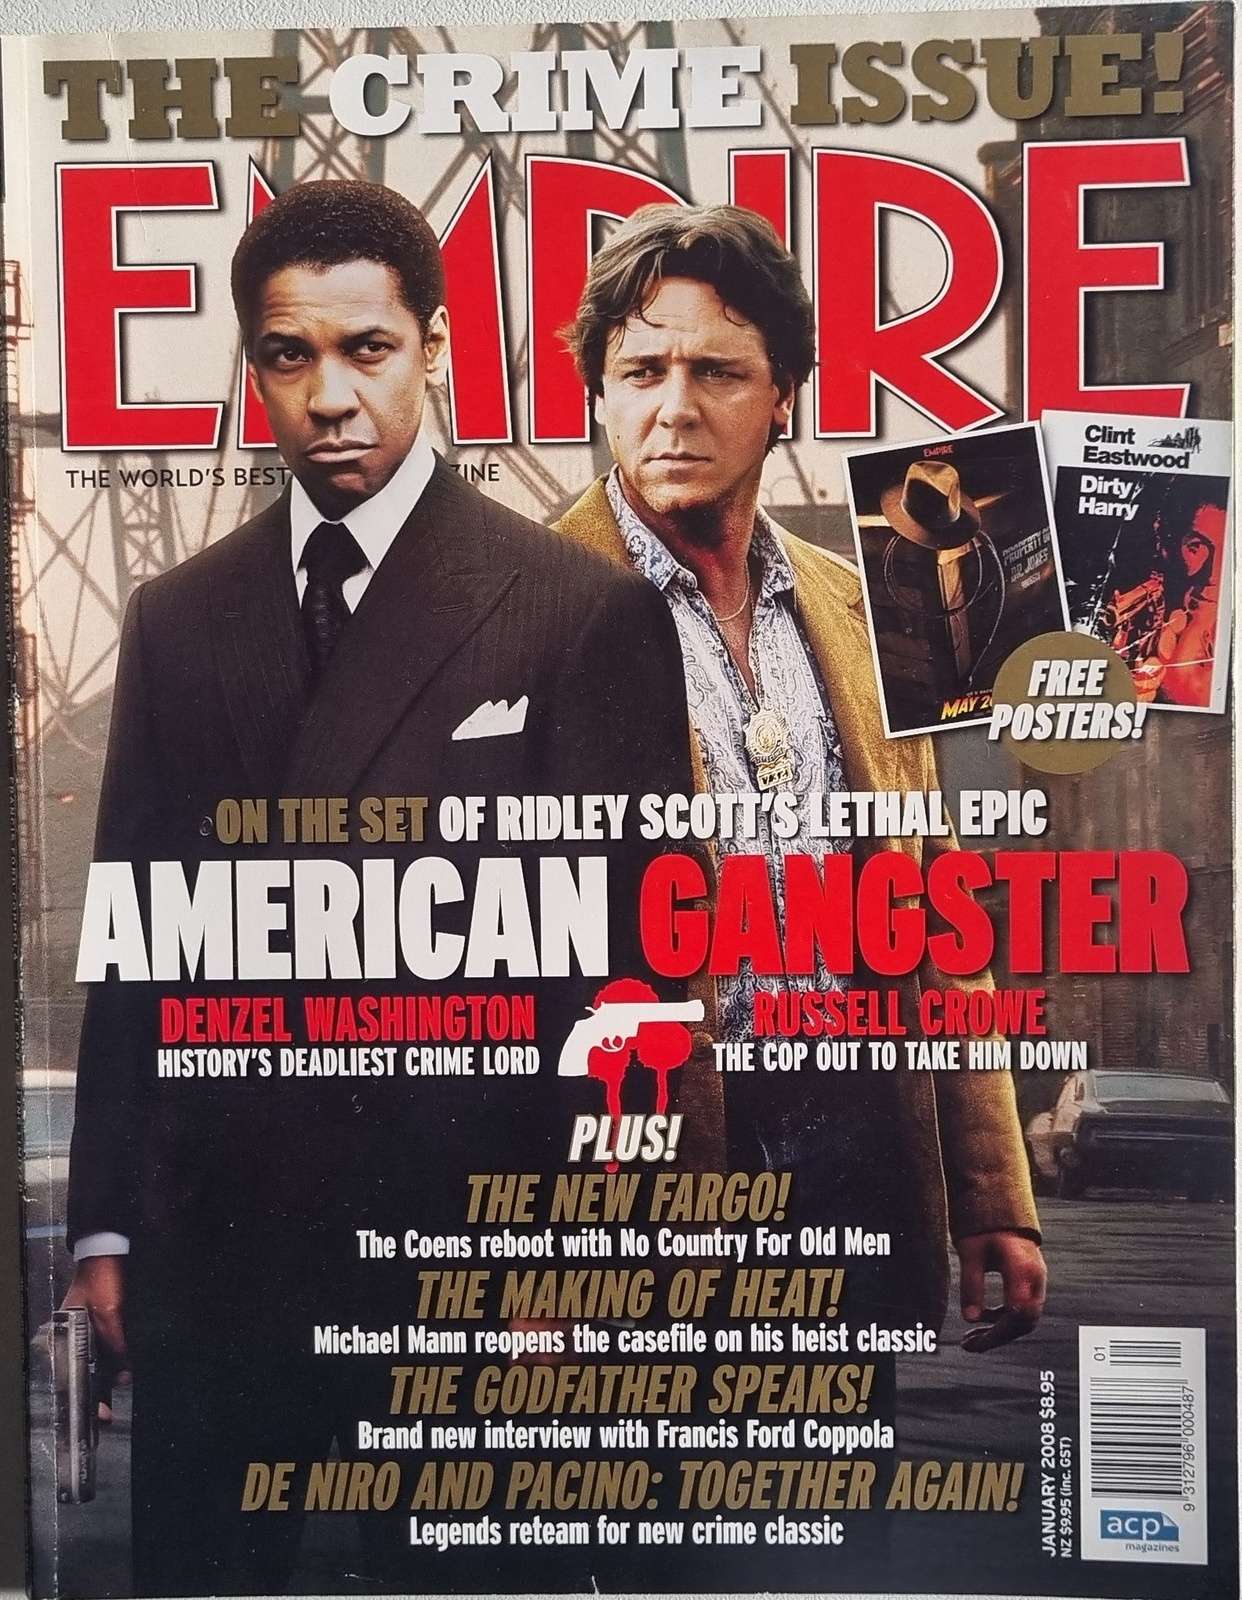 Empire (Australian Edition) January 2008